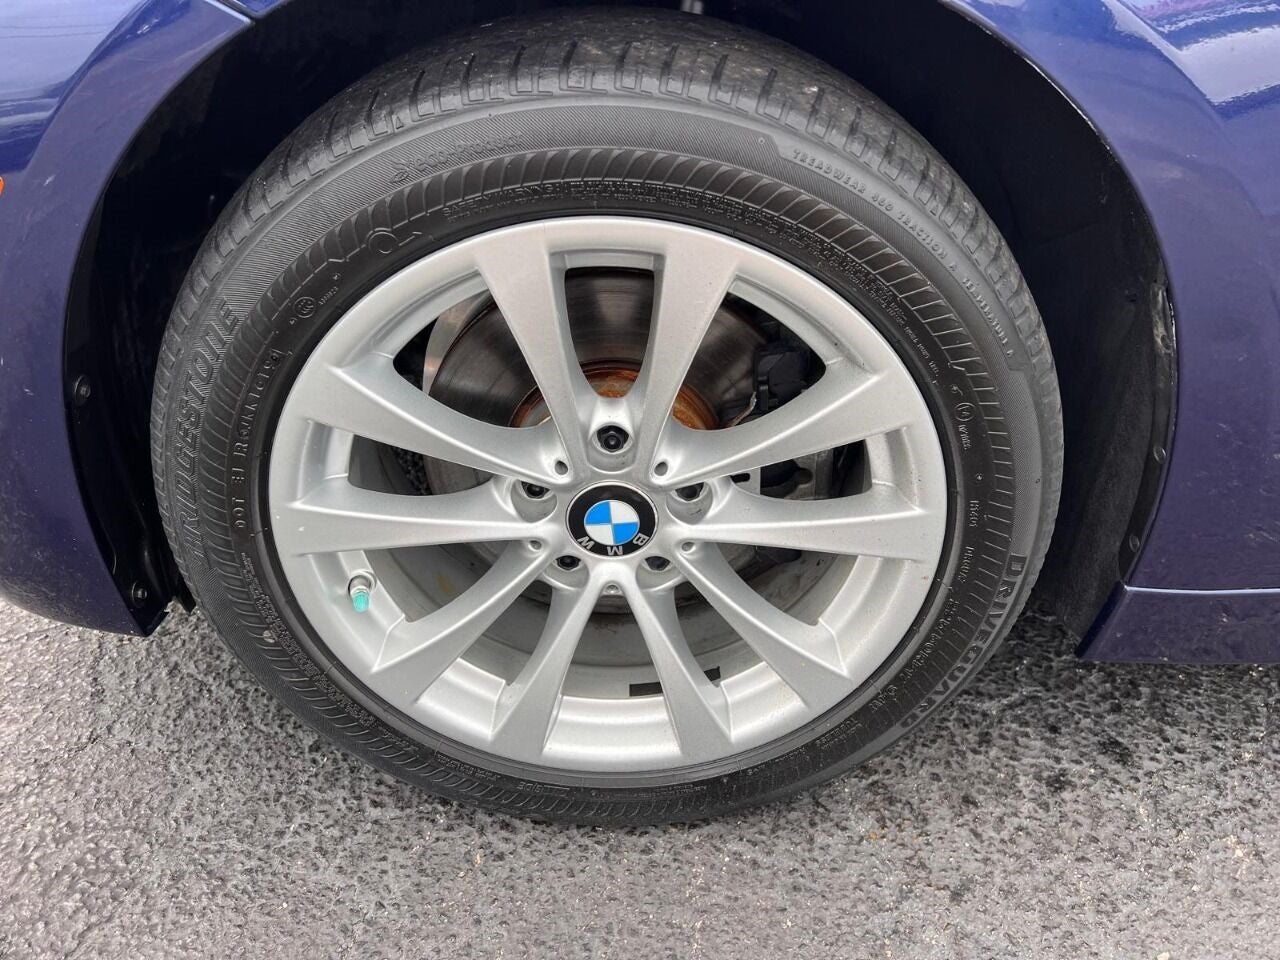 2017 BMW 3 Series 320i 4dr Sedan